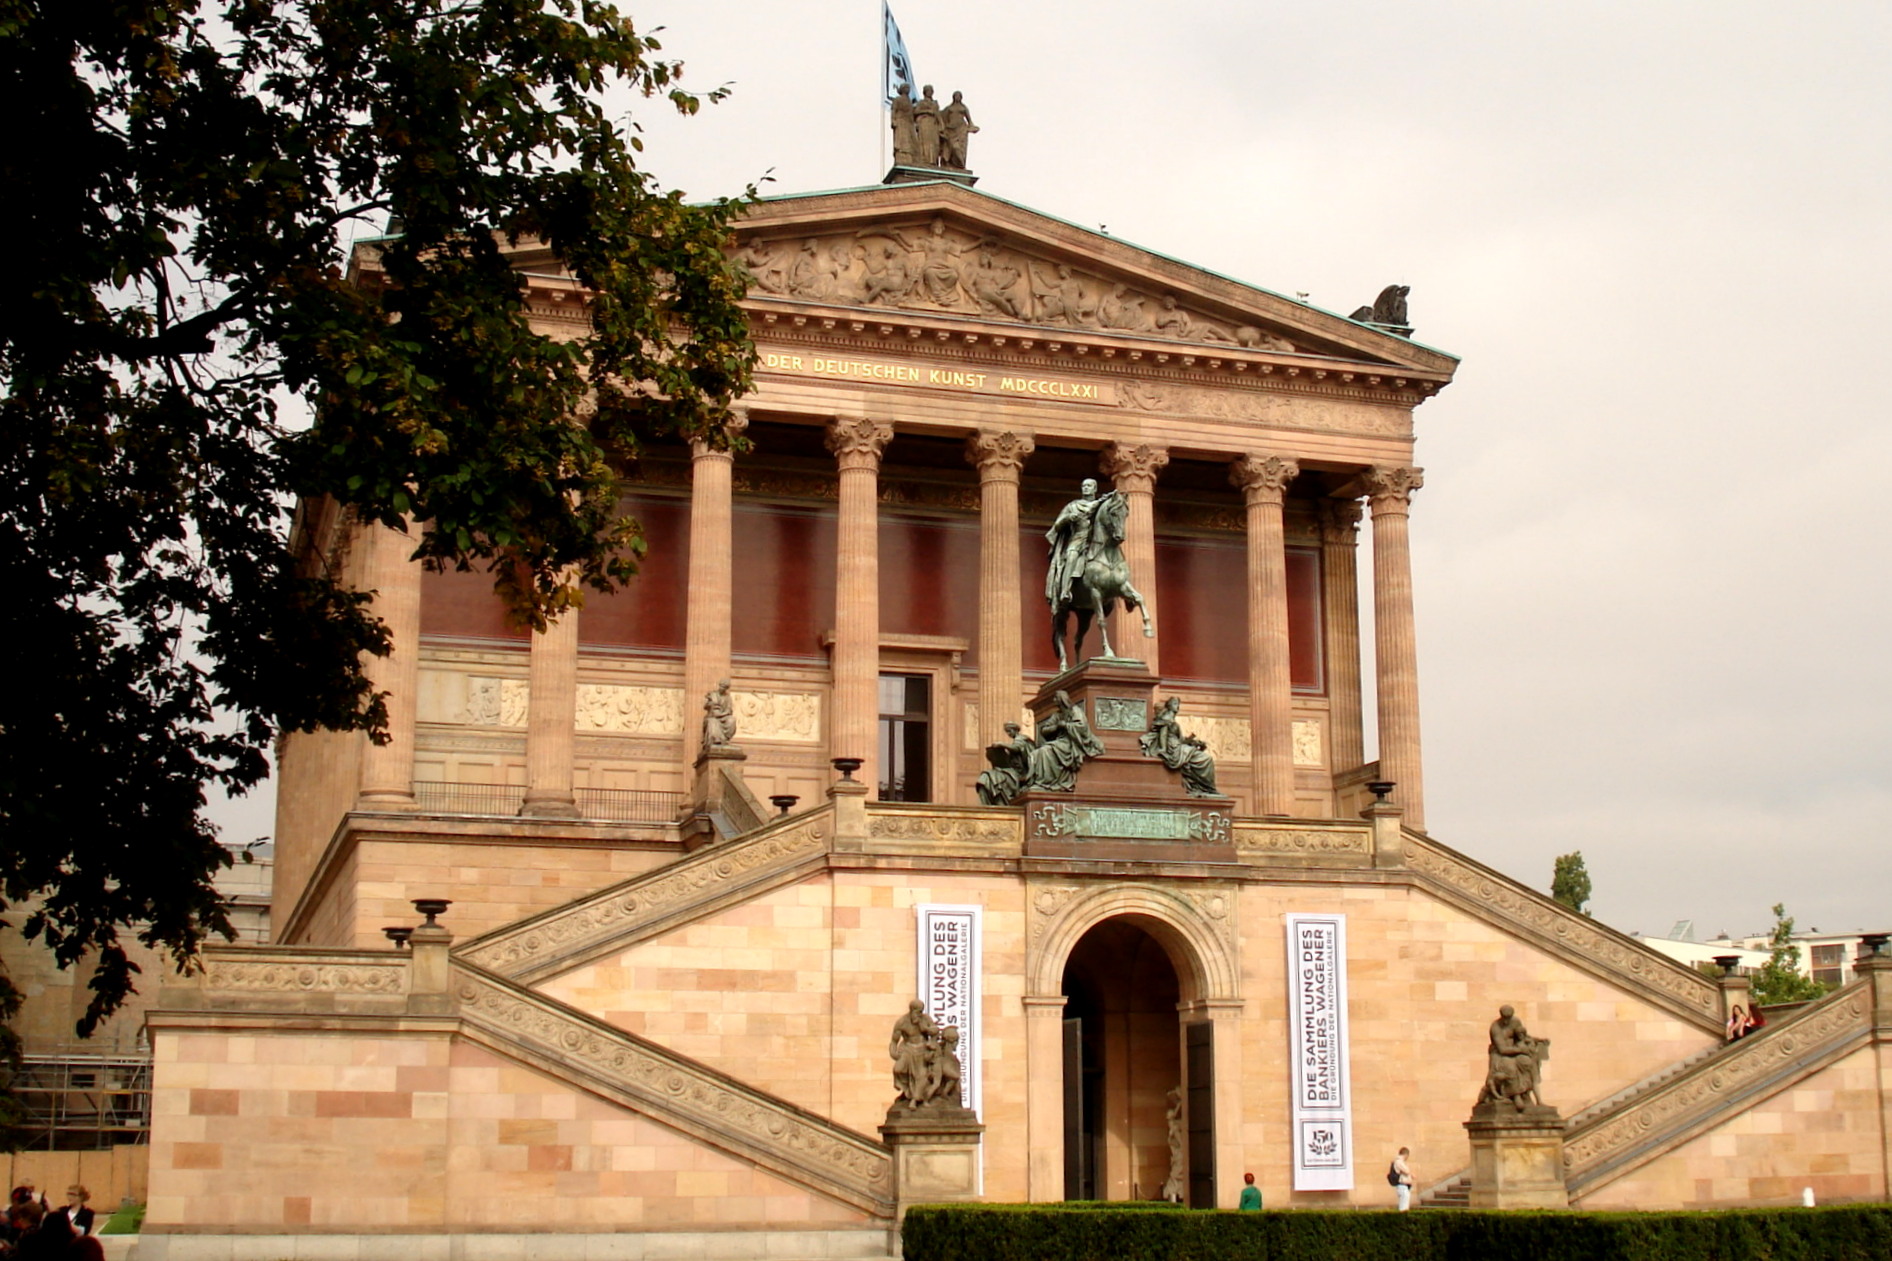 Alte Nationalgalerie à Berlin, l’île aux musées